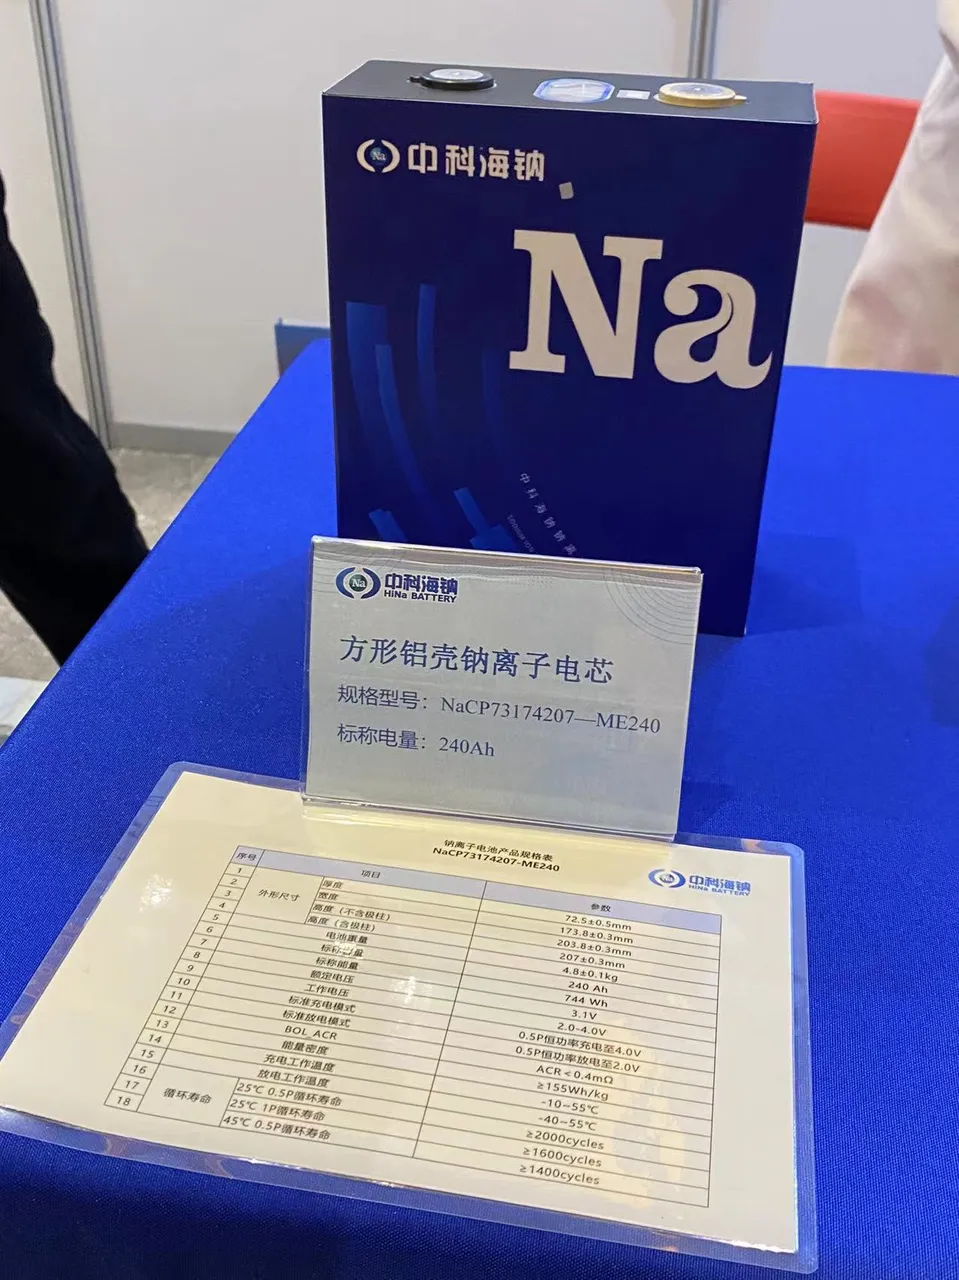 HiNa Battery (中科海钠) Sodium-ion Cell (Na-ion) - NaCP50160118-ME80